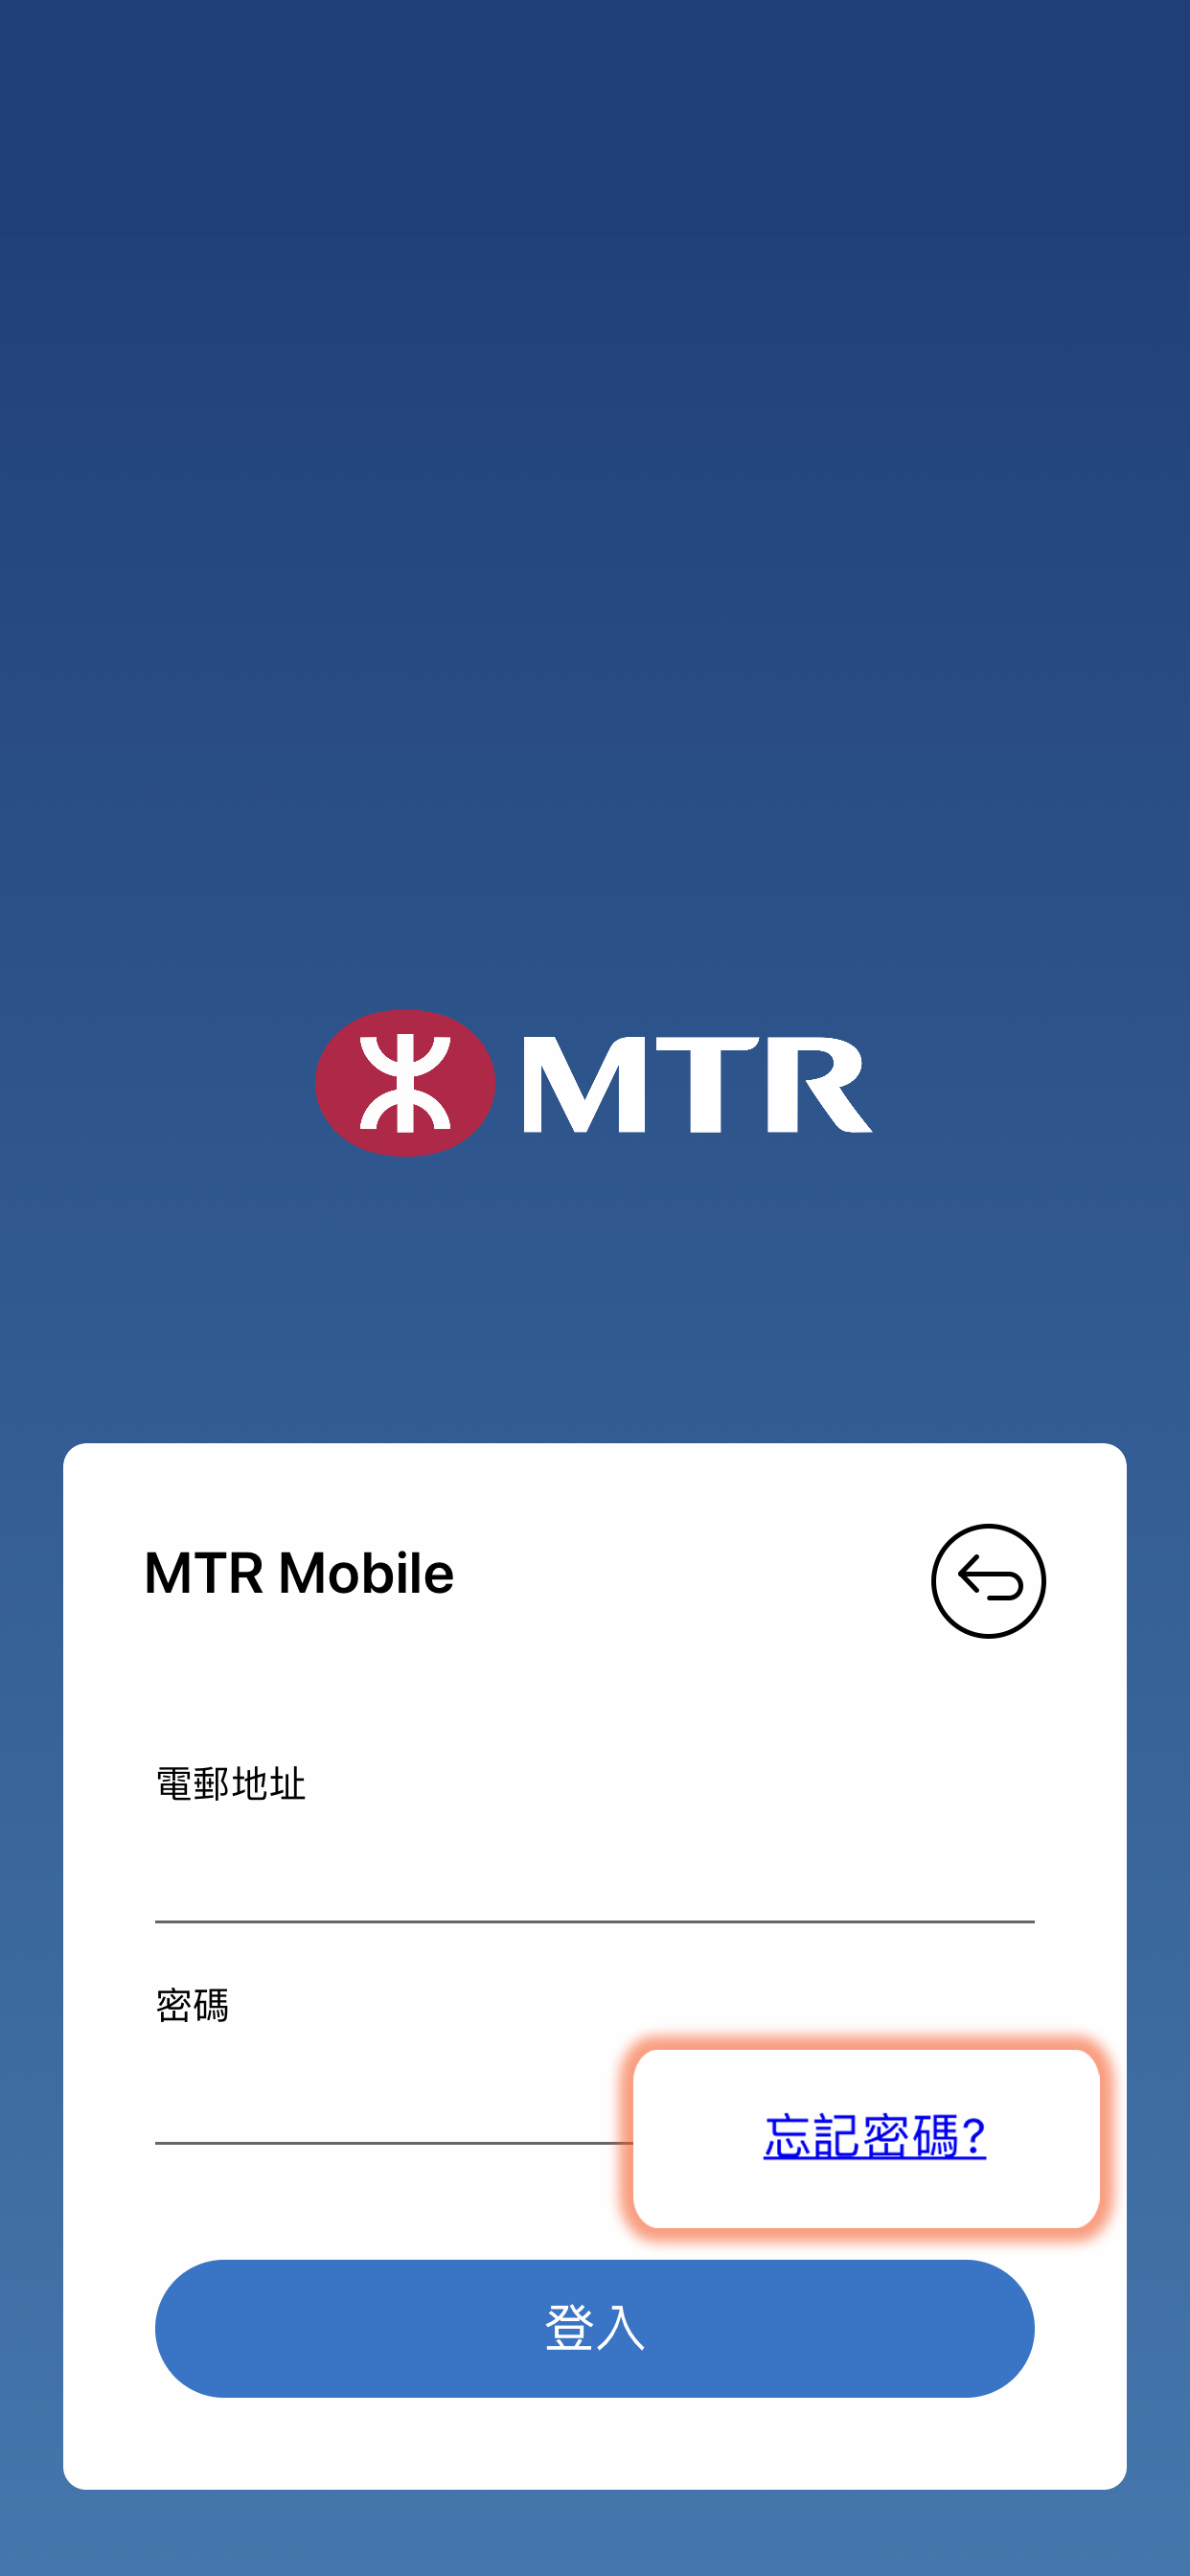 登記用戶可於MTR Mobile的登入頁面，點選「忘記密碼」